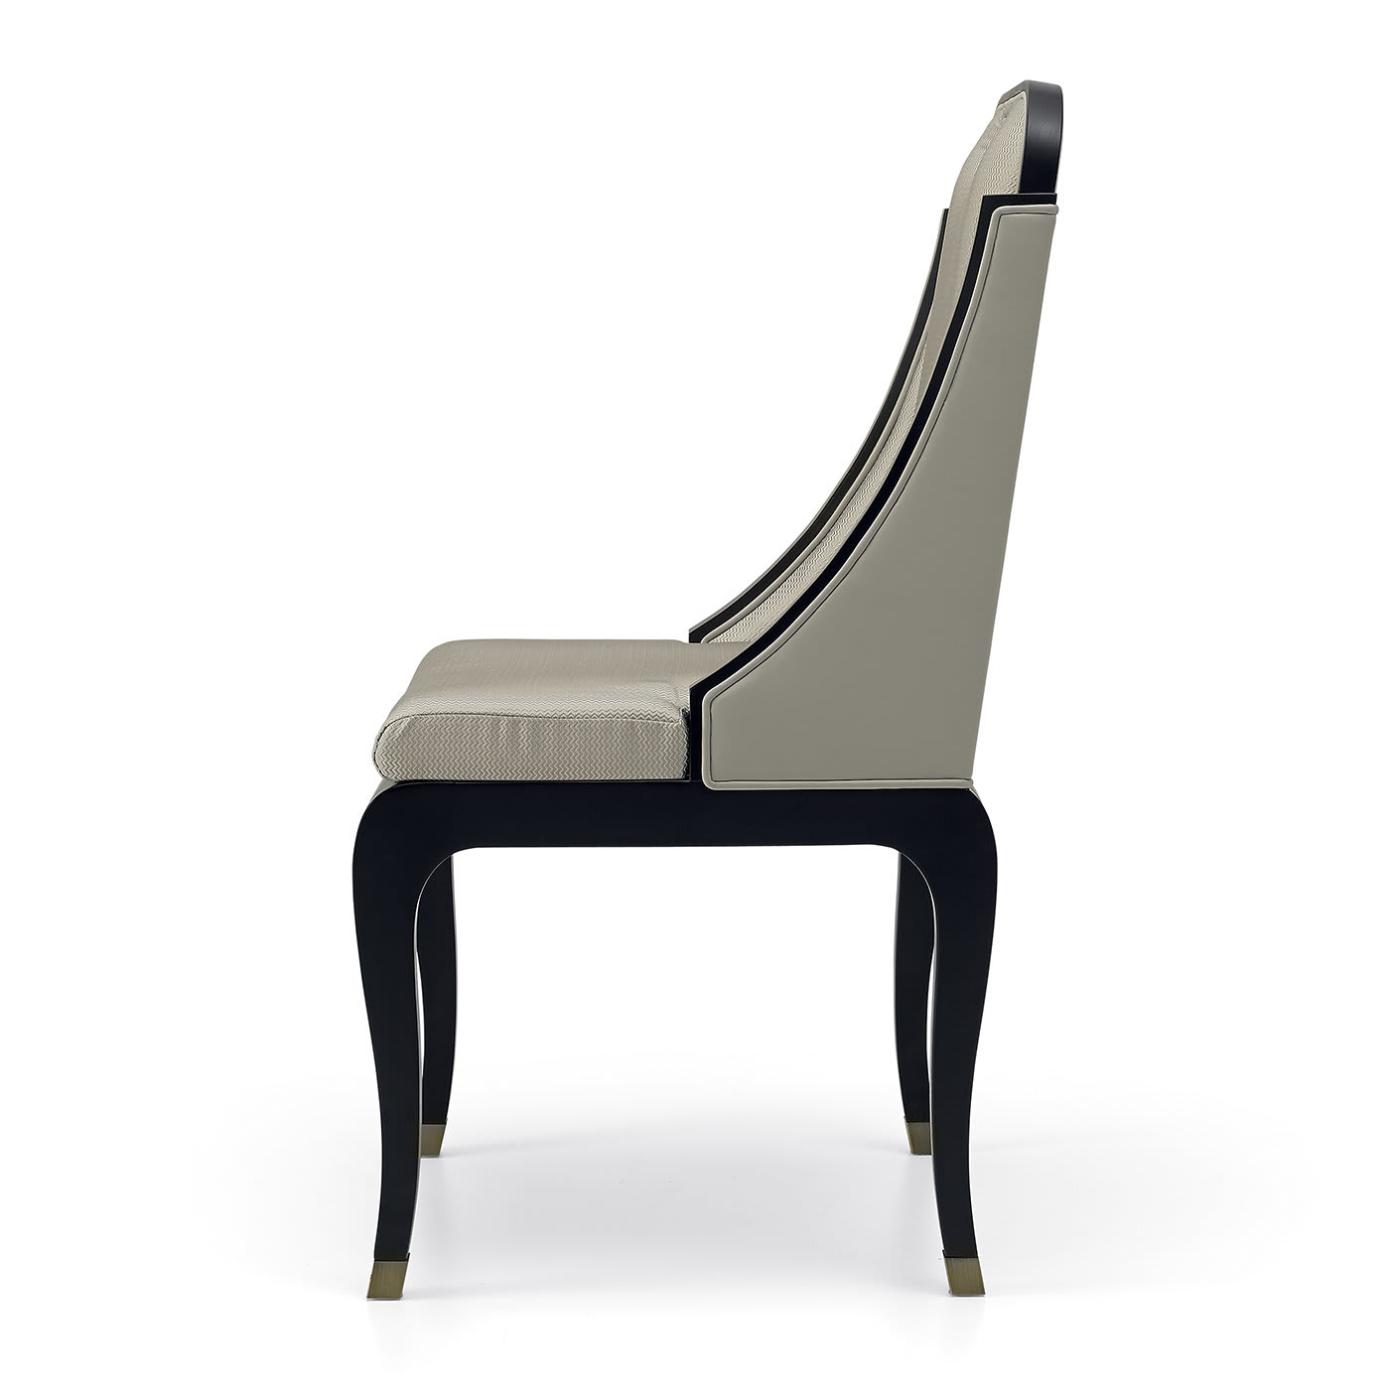 Dilan High-End Italian Chair